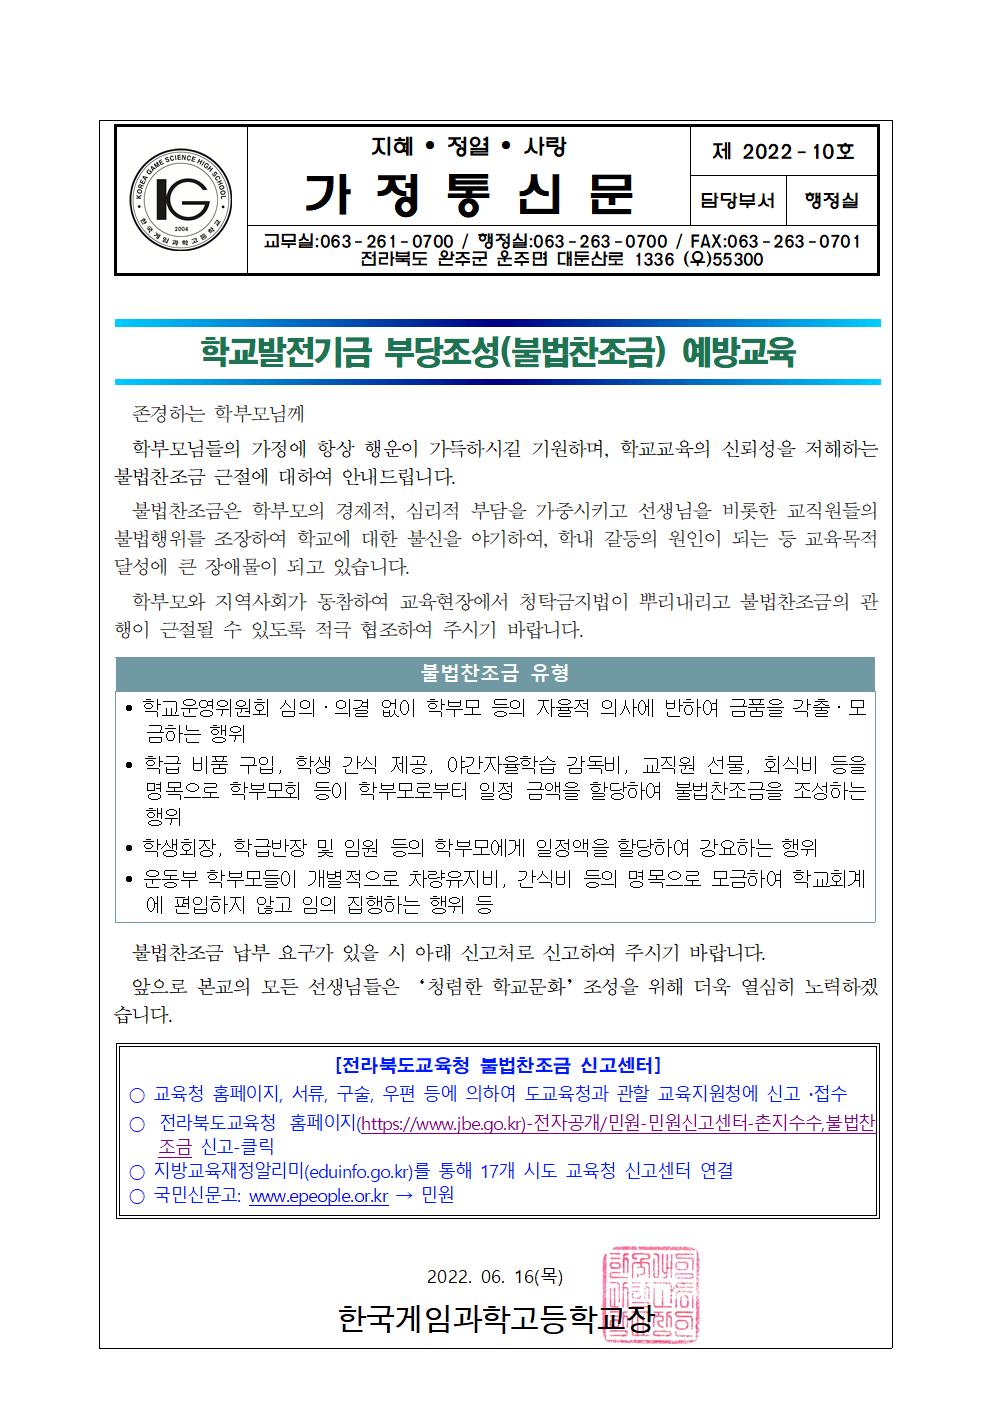 학교발전기금 부당조성(불법찬조금) 예방교육 가정통신문001